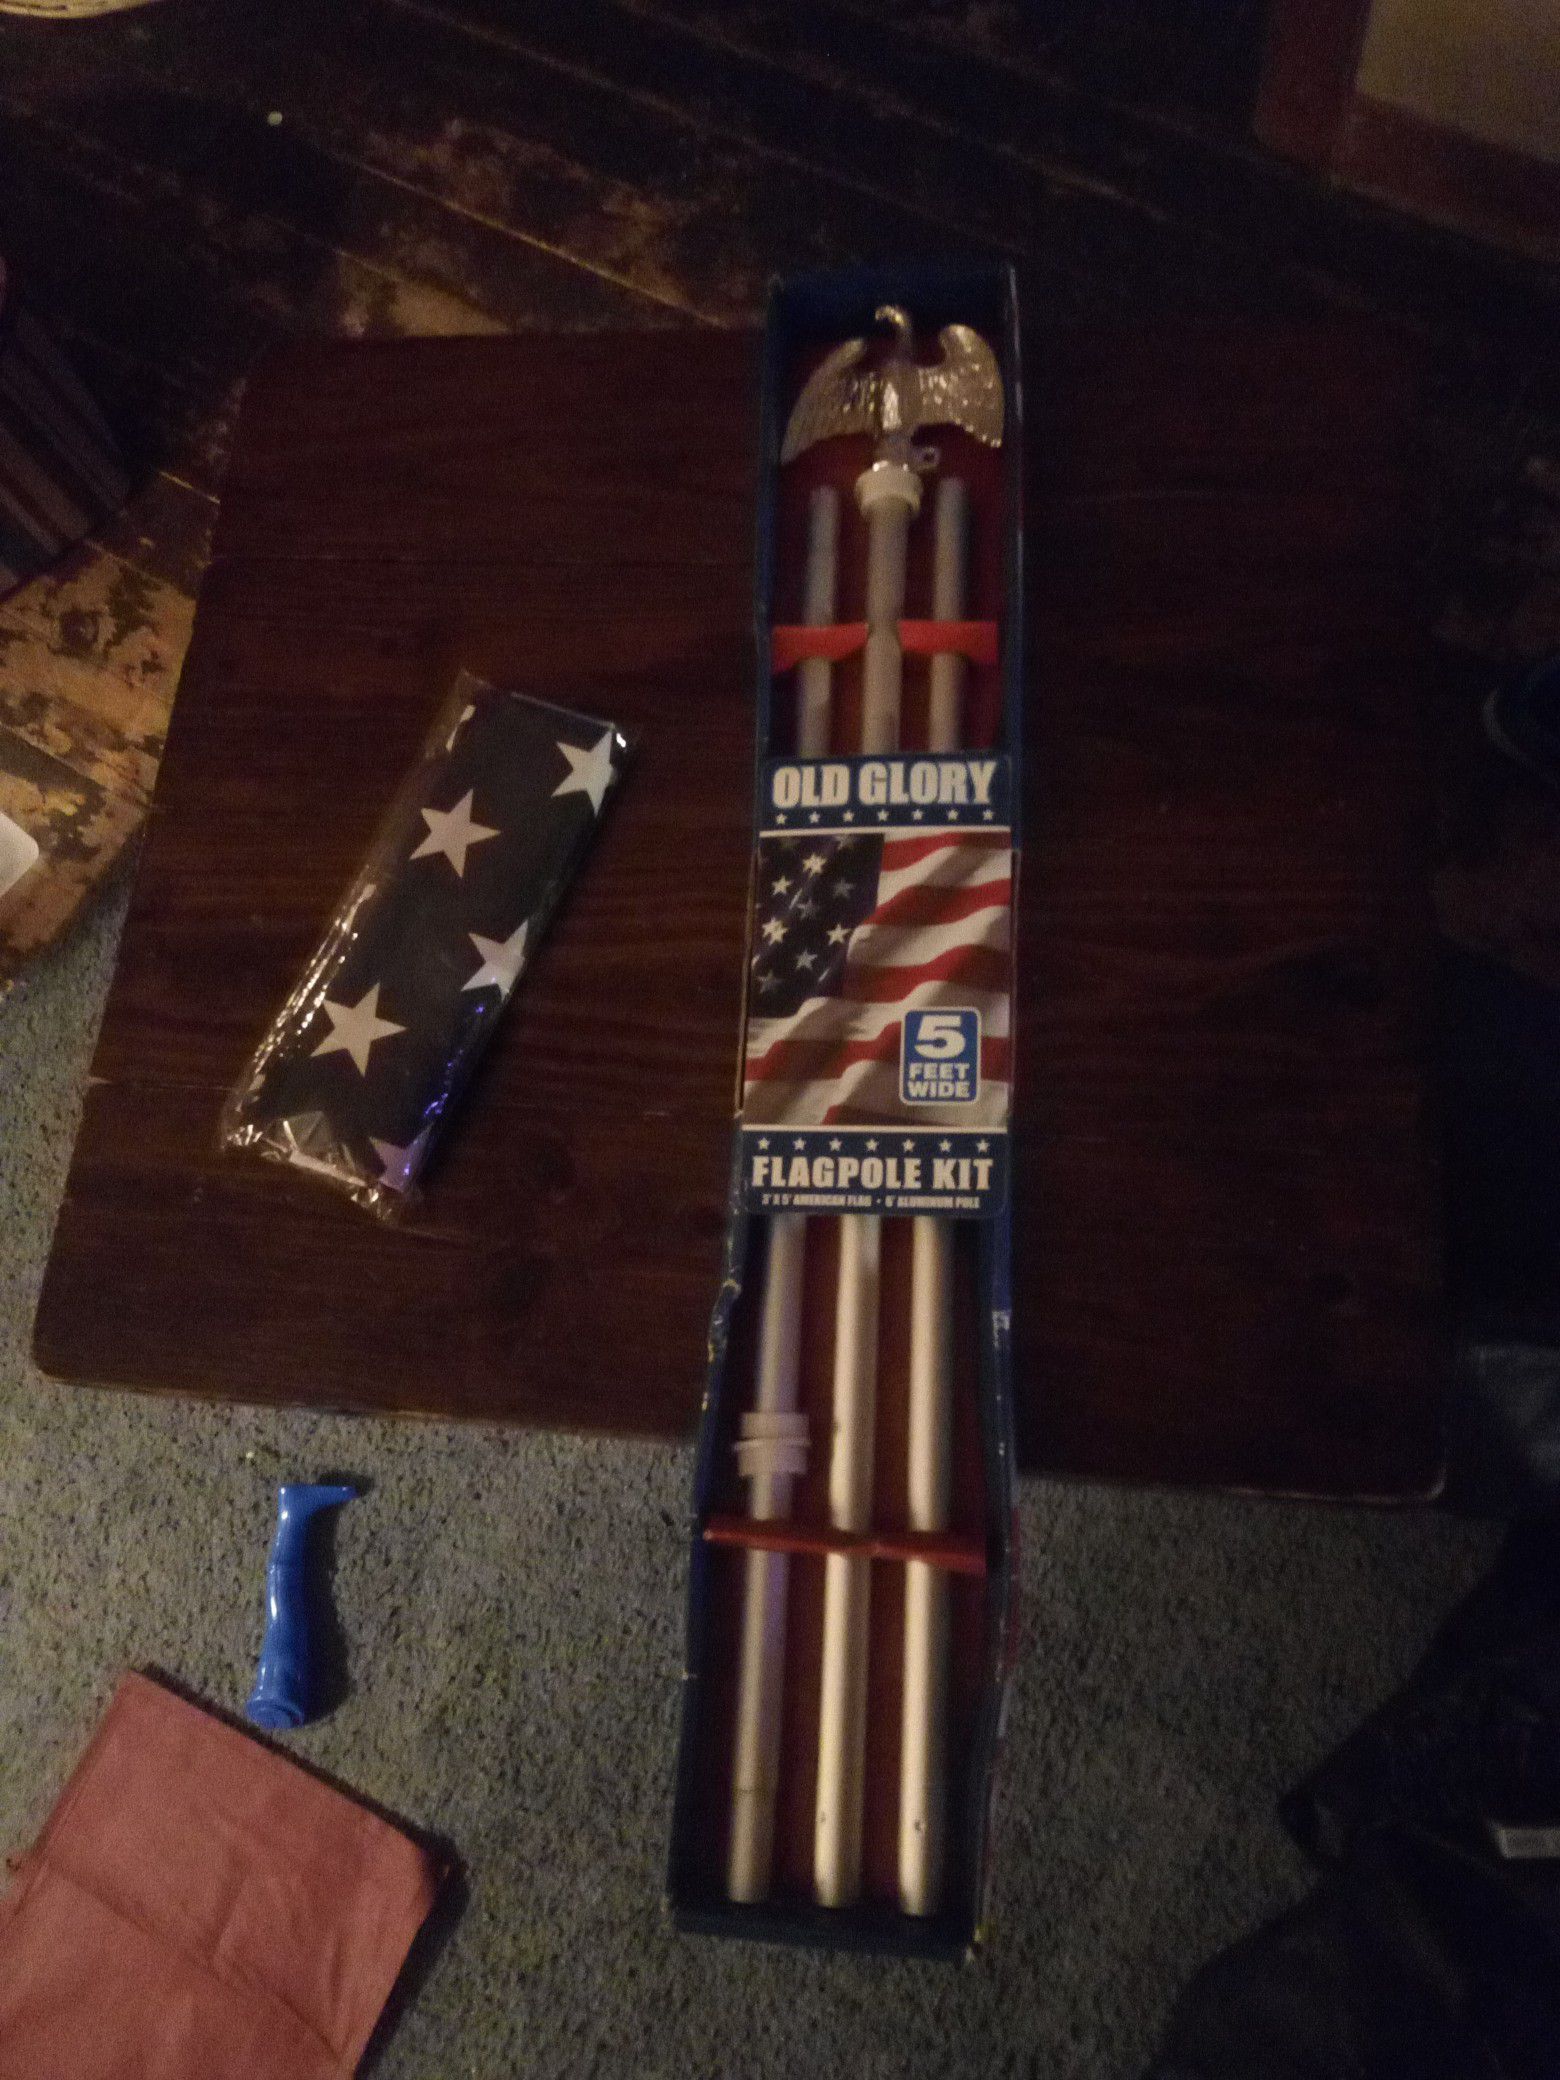 Flagpole kit